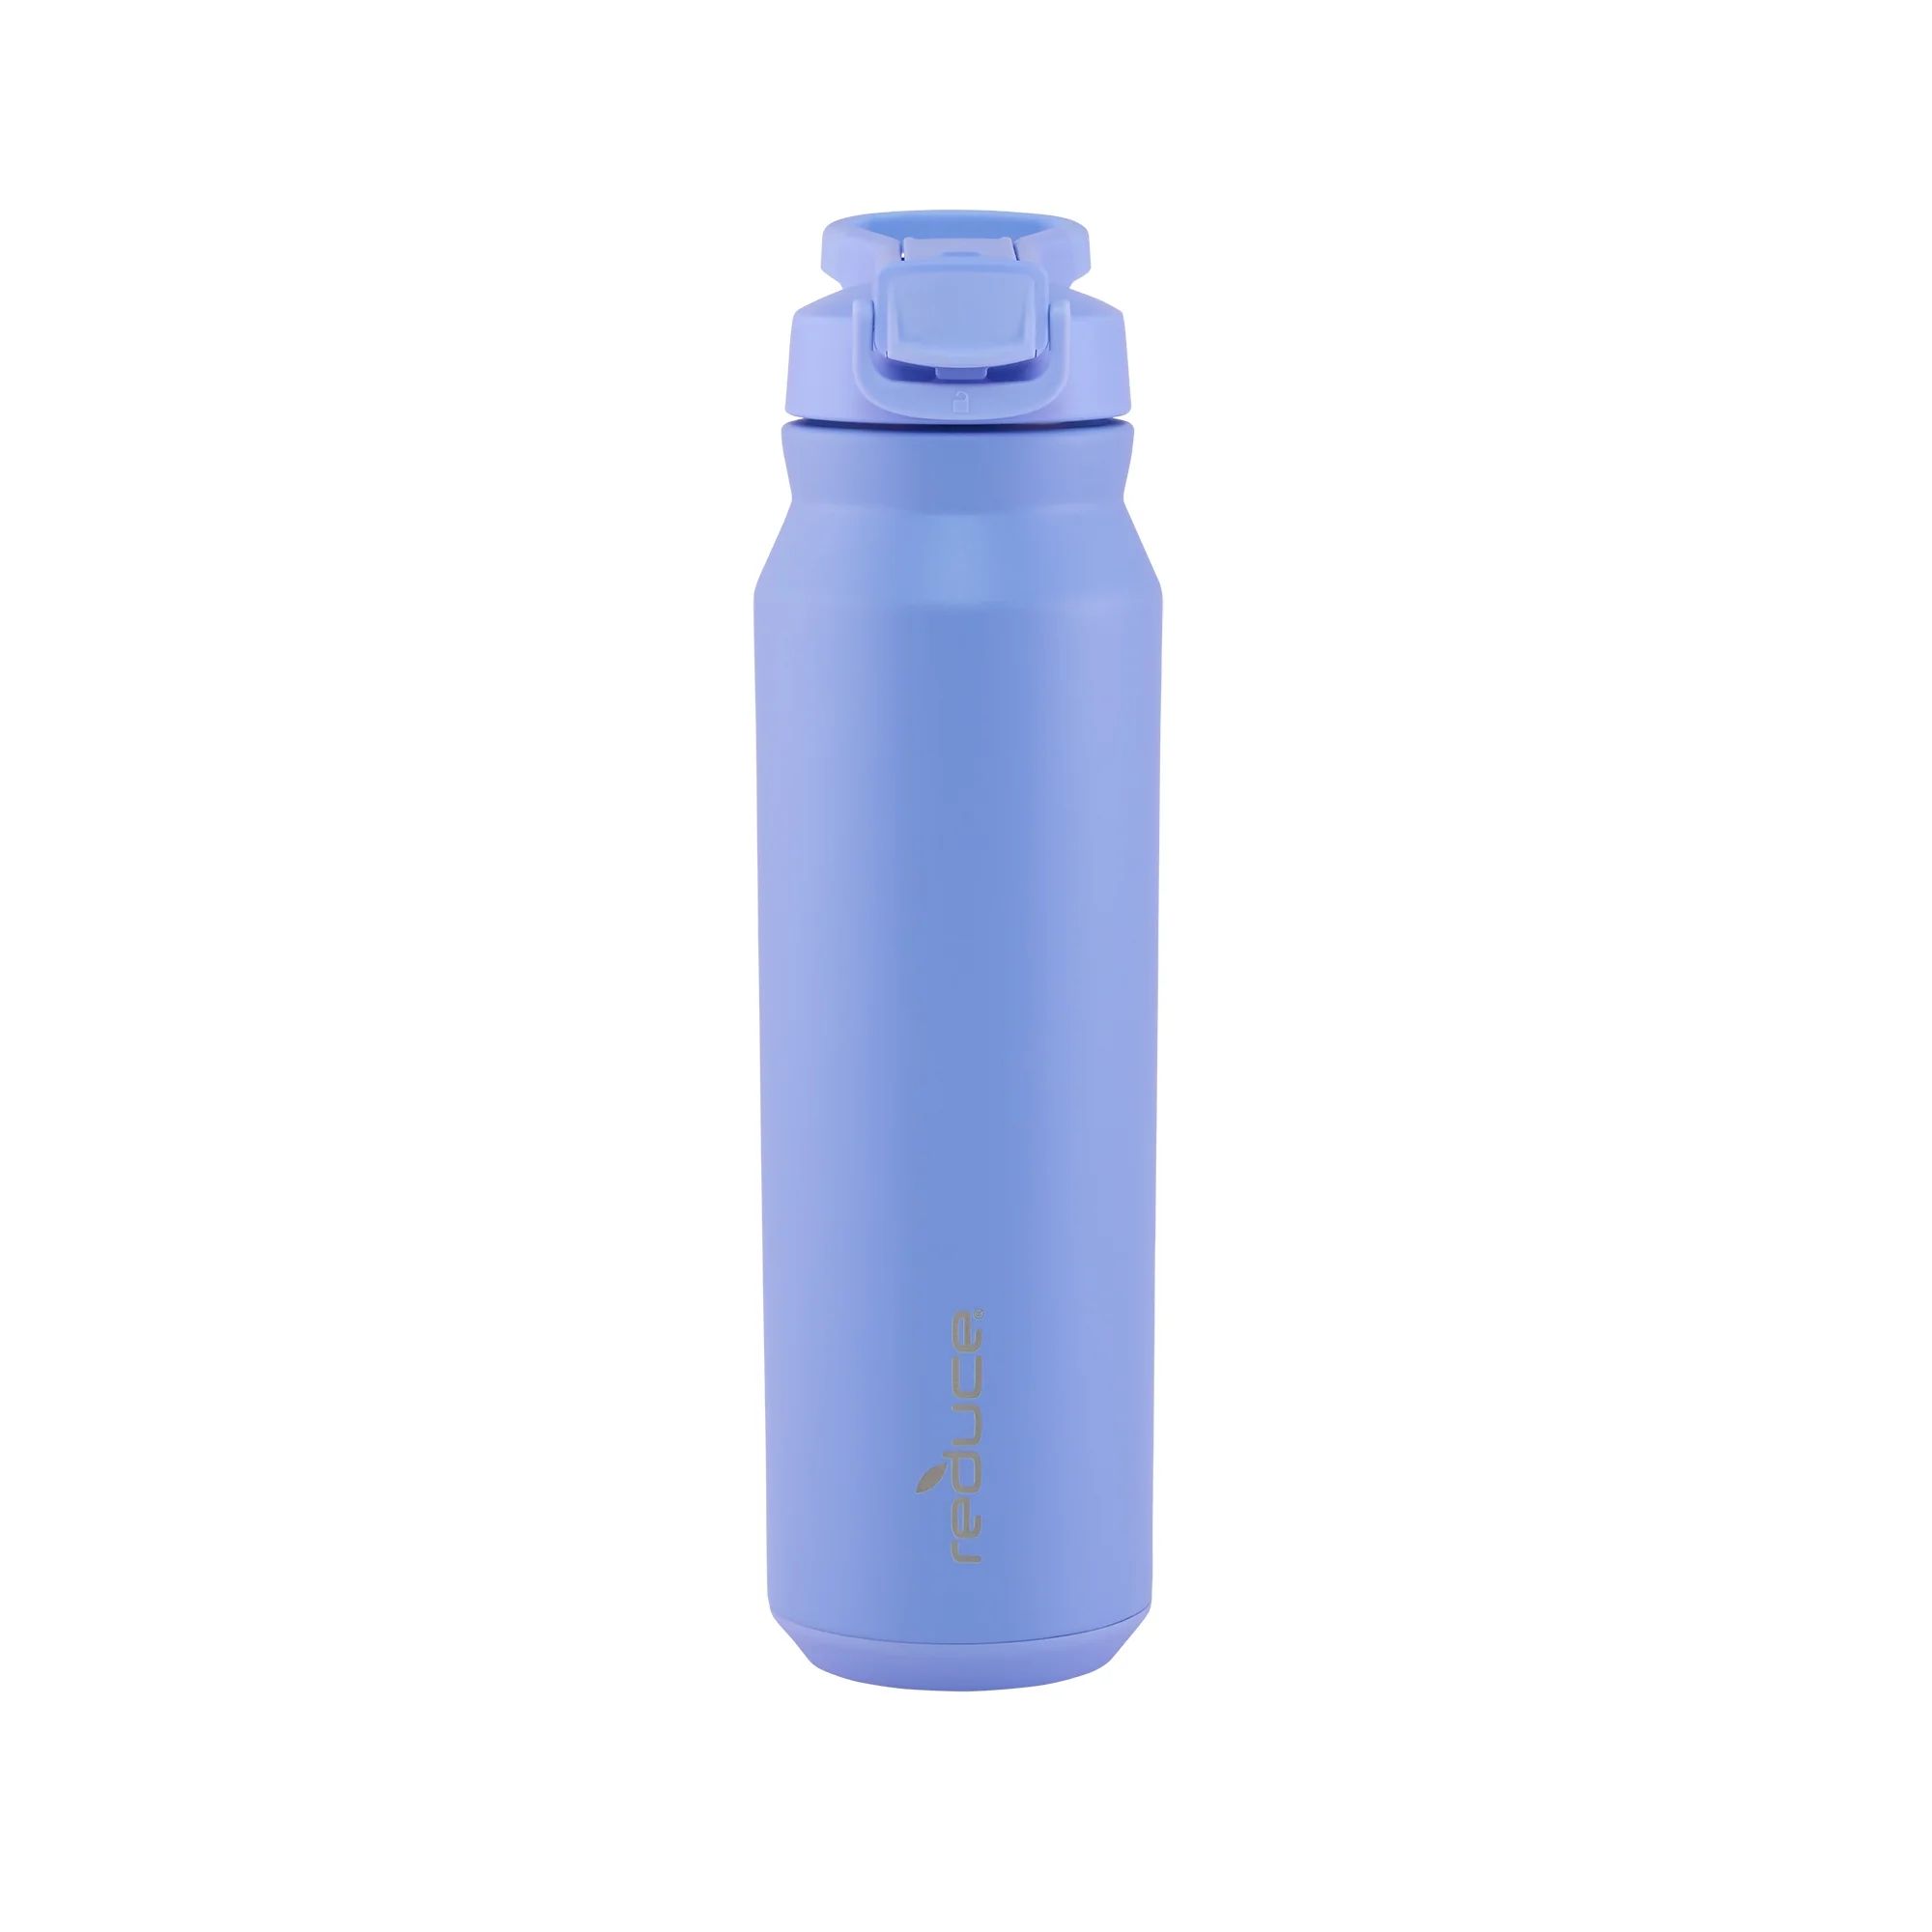 Reduce Hydrate Pro Water Bottle - Hidden Straw Flip Top Lid Spill-Proof, Stainless Steel - 32oz | Walmart (US)